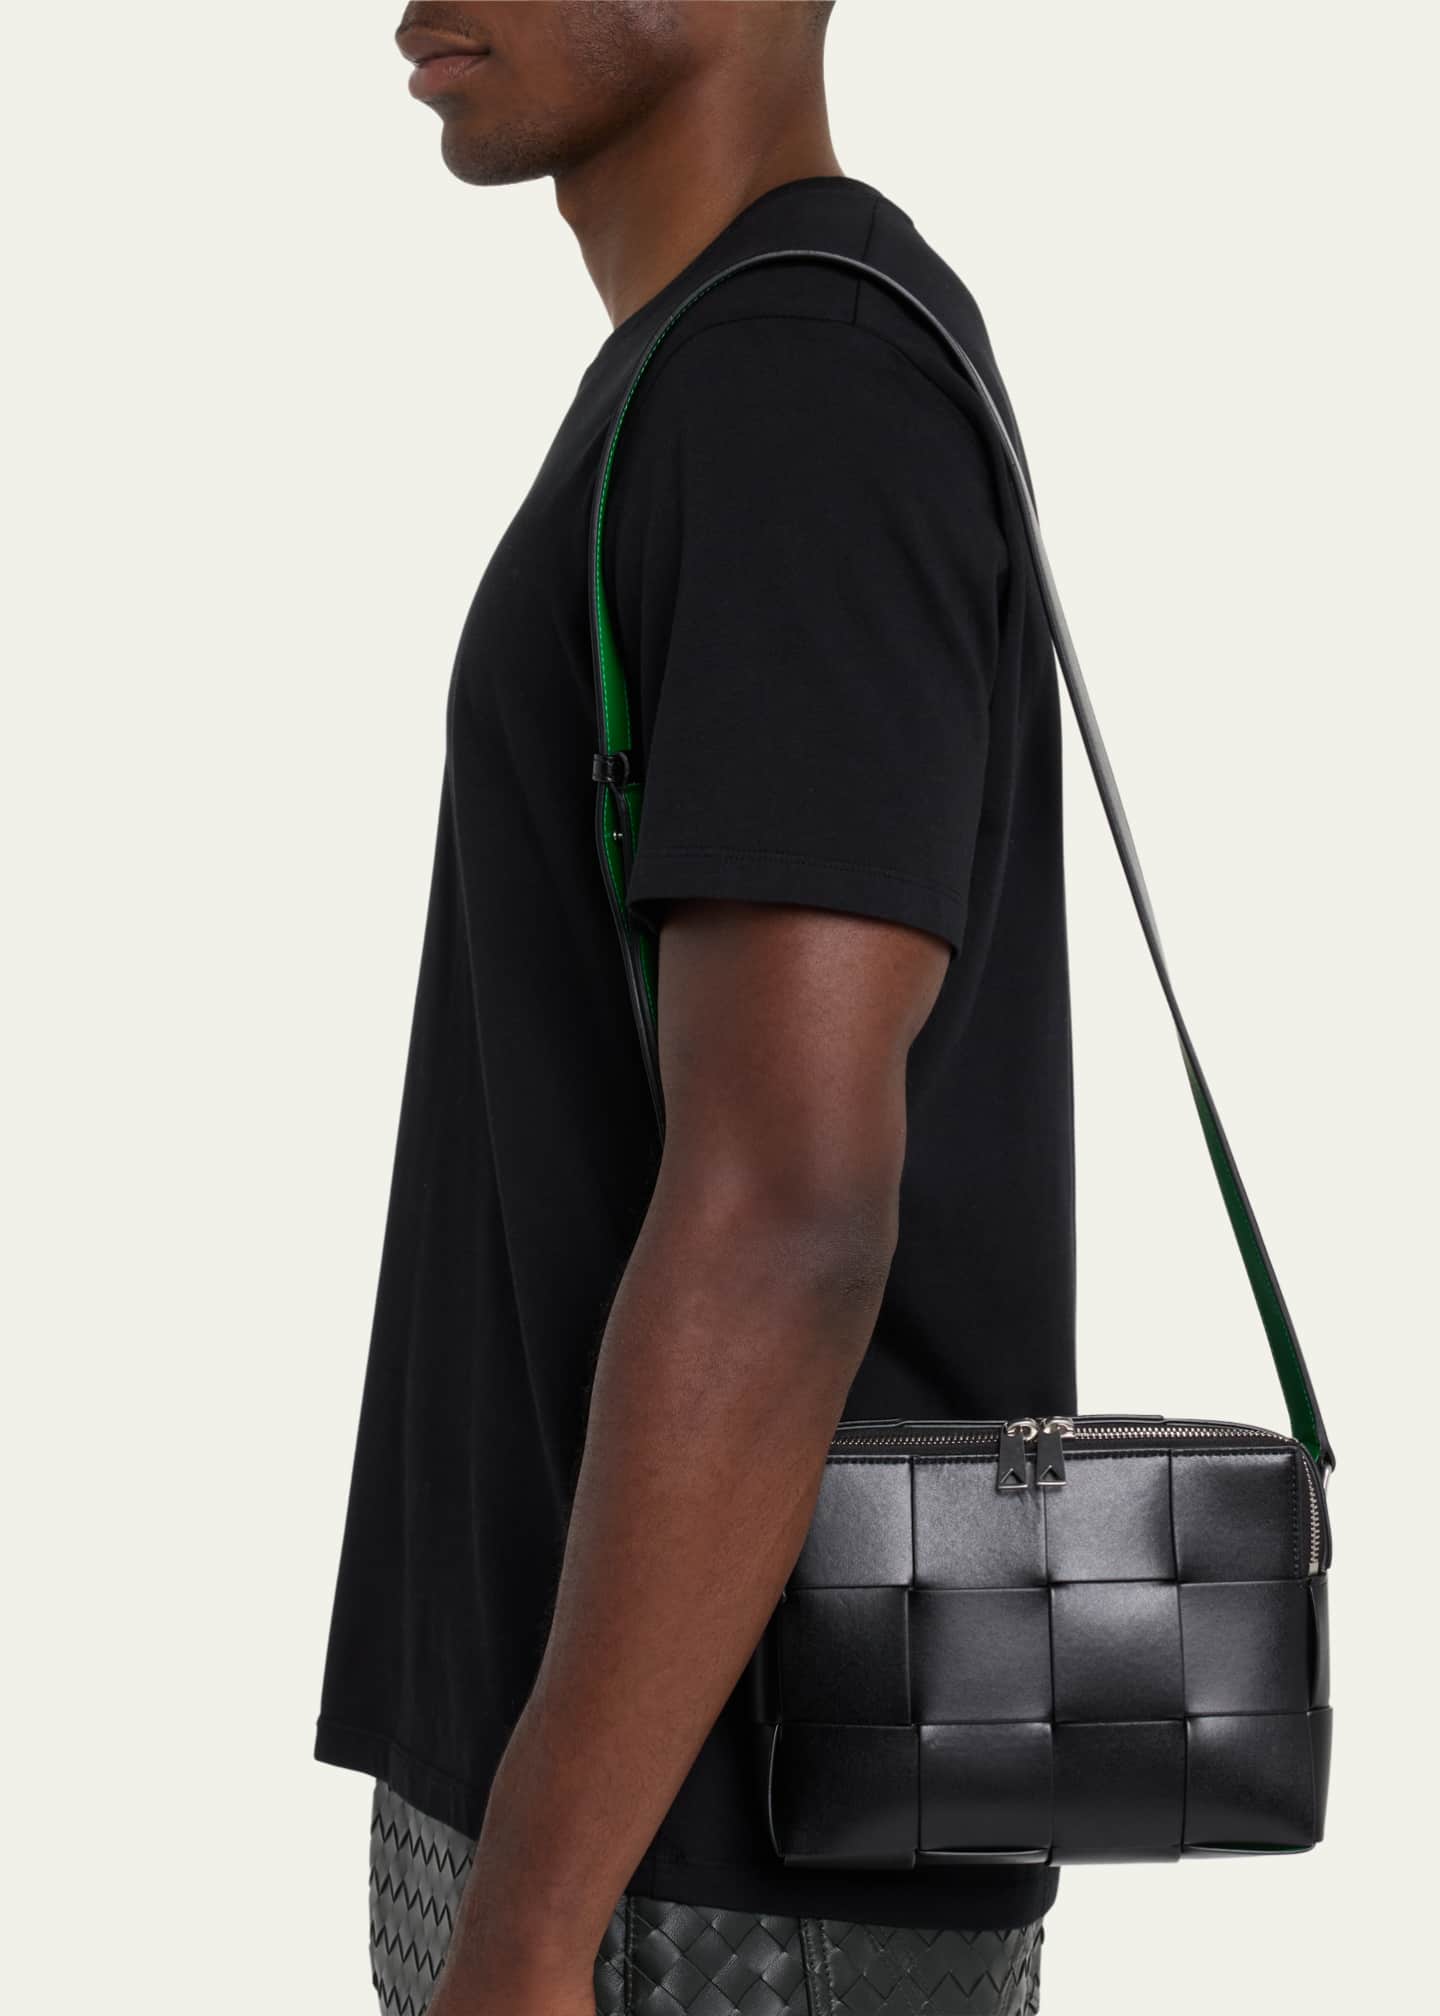 Cassette Small Leather Shoulder Bag in Black - Bottega Veneta